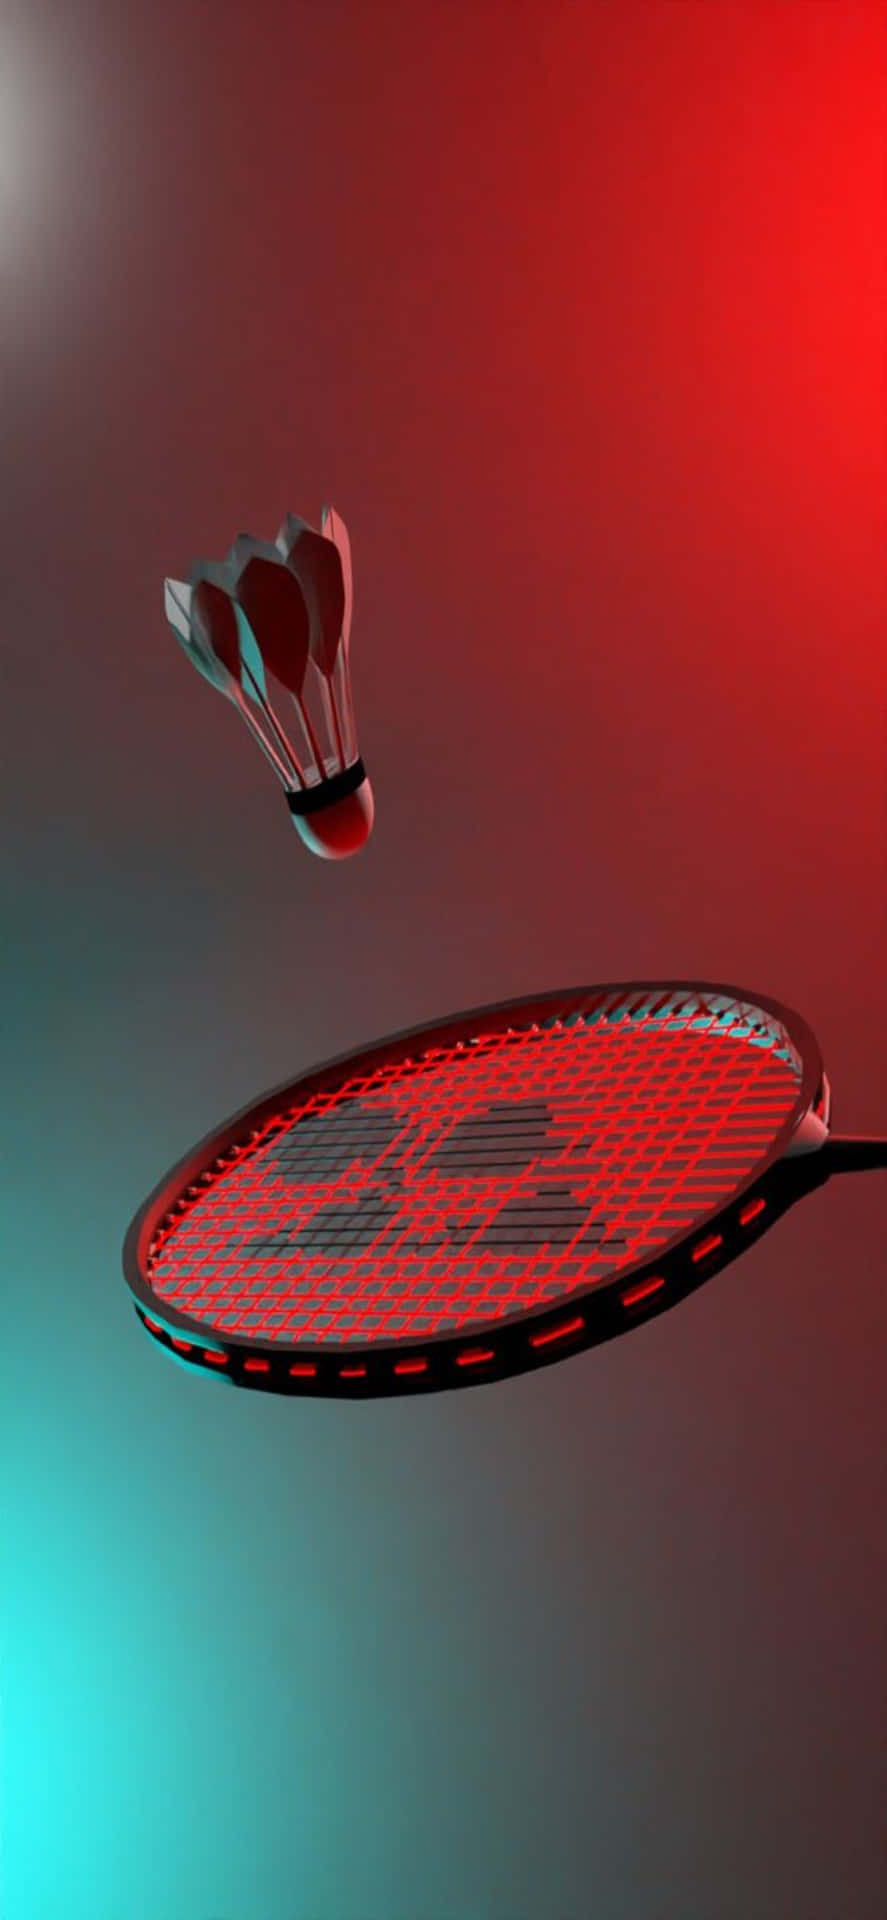 Momentoperfetto Per Una Partita Di Badminton Su Un Iphone Xs Max.